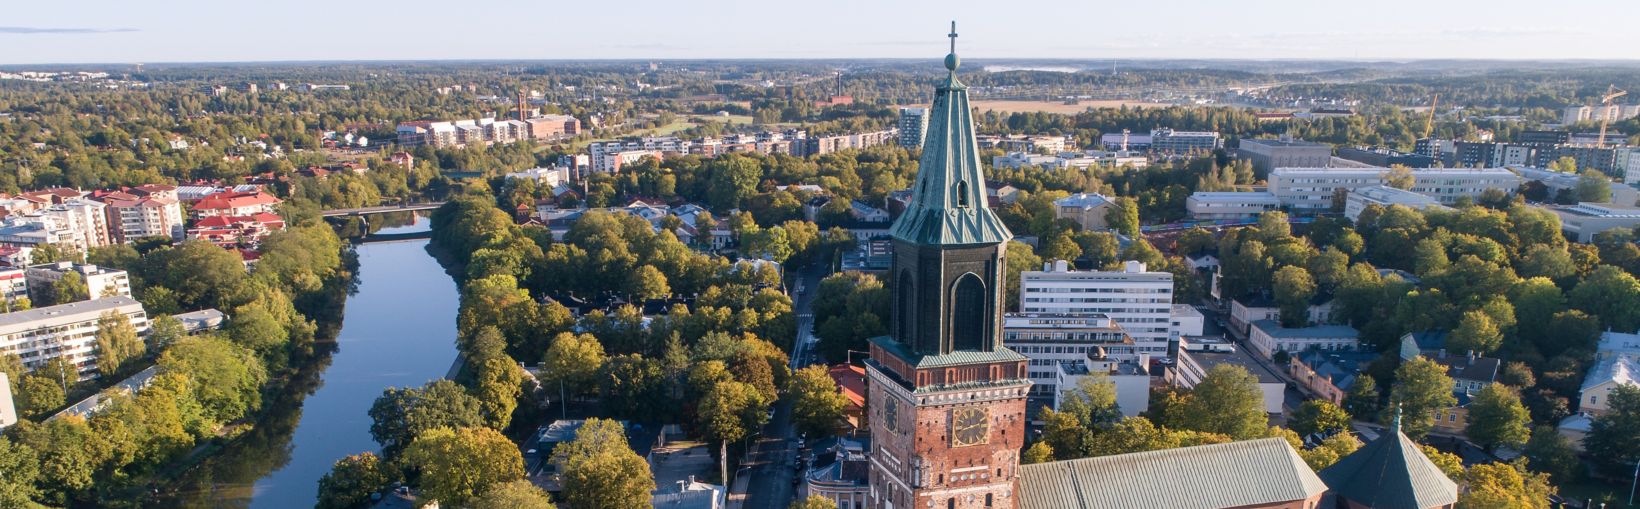 Udsigt over området ved Turkus katedral på en sommermorgen